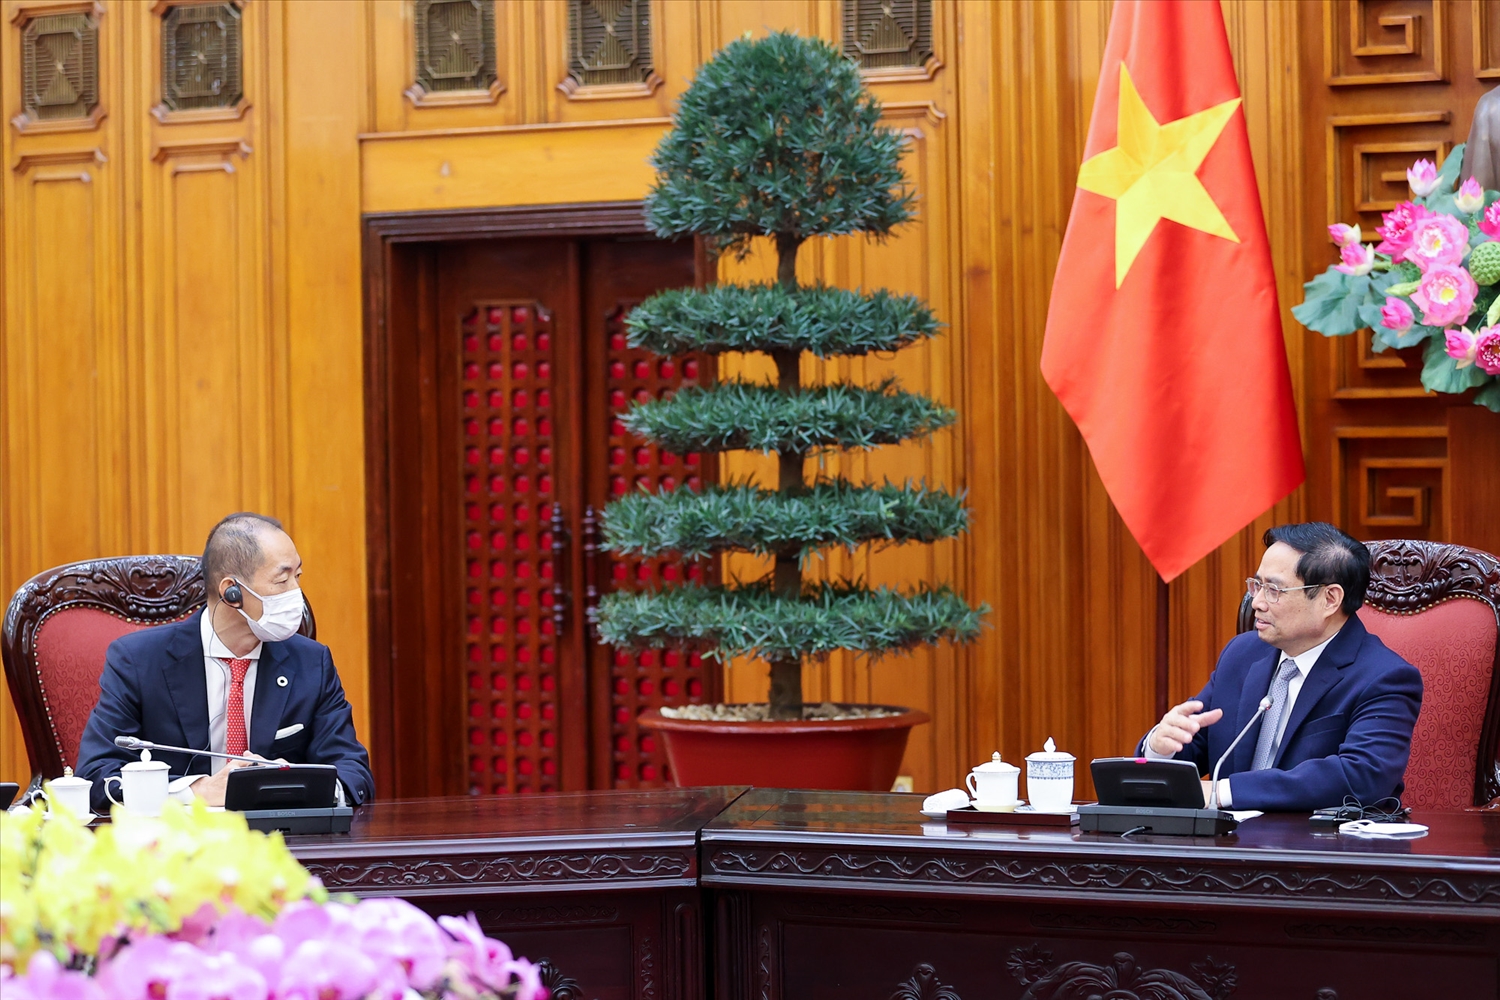 Thủ tướng Phạm Minh Chính: Việt Nam xác định vaccine, thuốc chữa bệnh và ý thức người dân là 3 yếu tố quyết định để mở cửa thành công nền kinh tế - Ảnh: VGP/Nhật Bắc